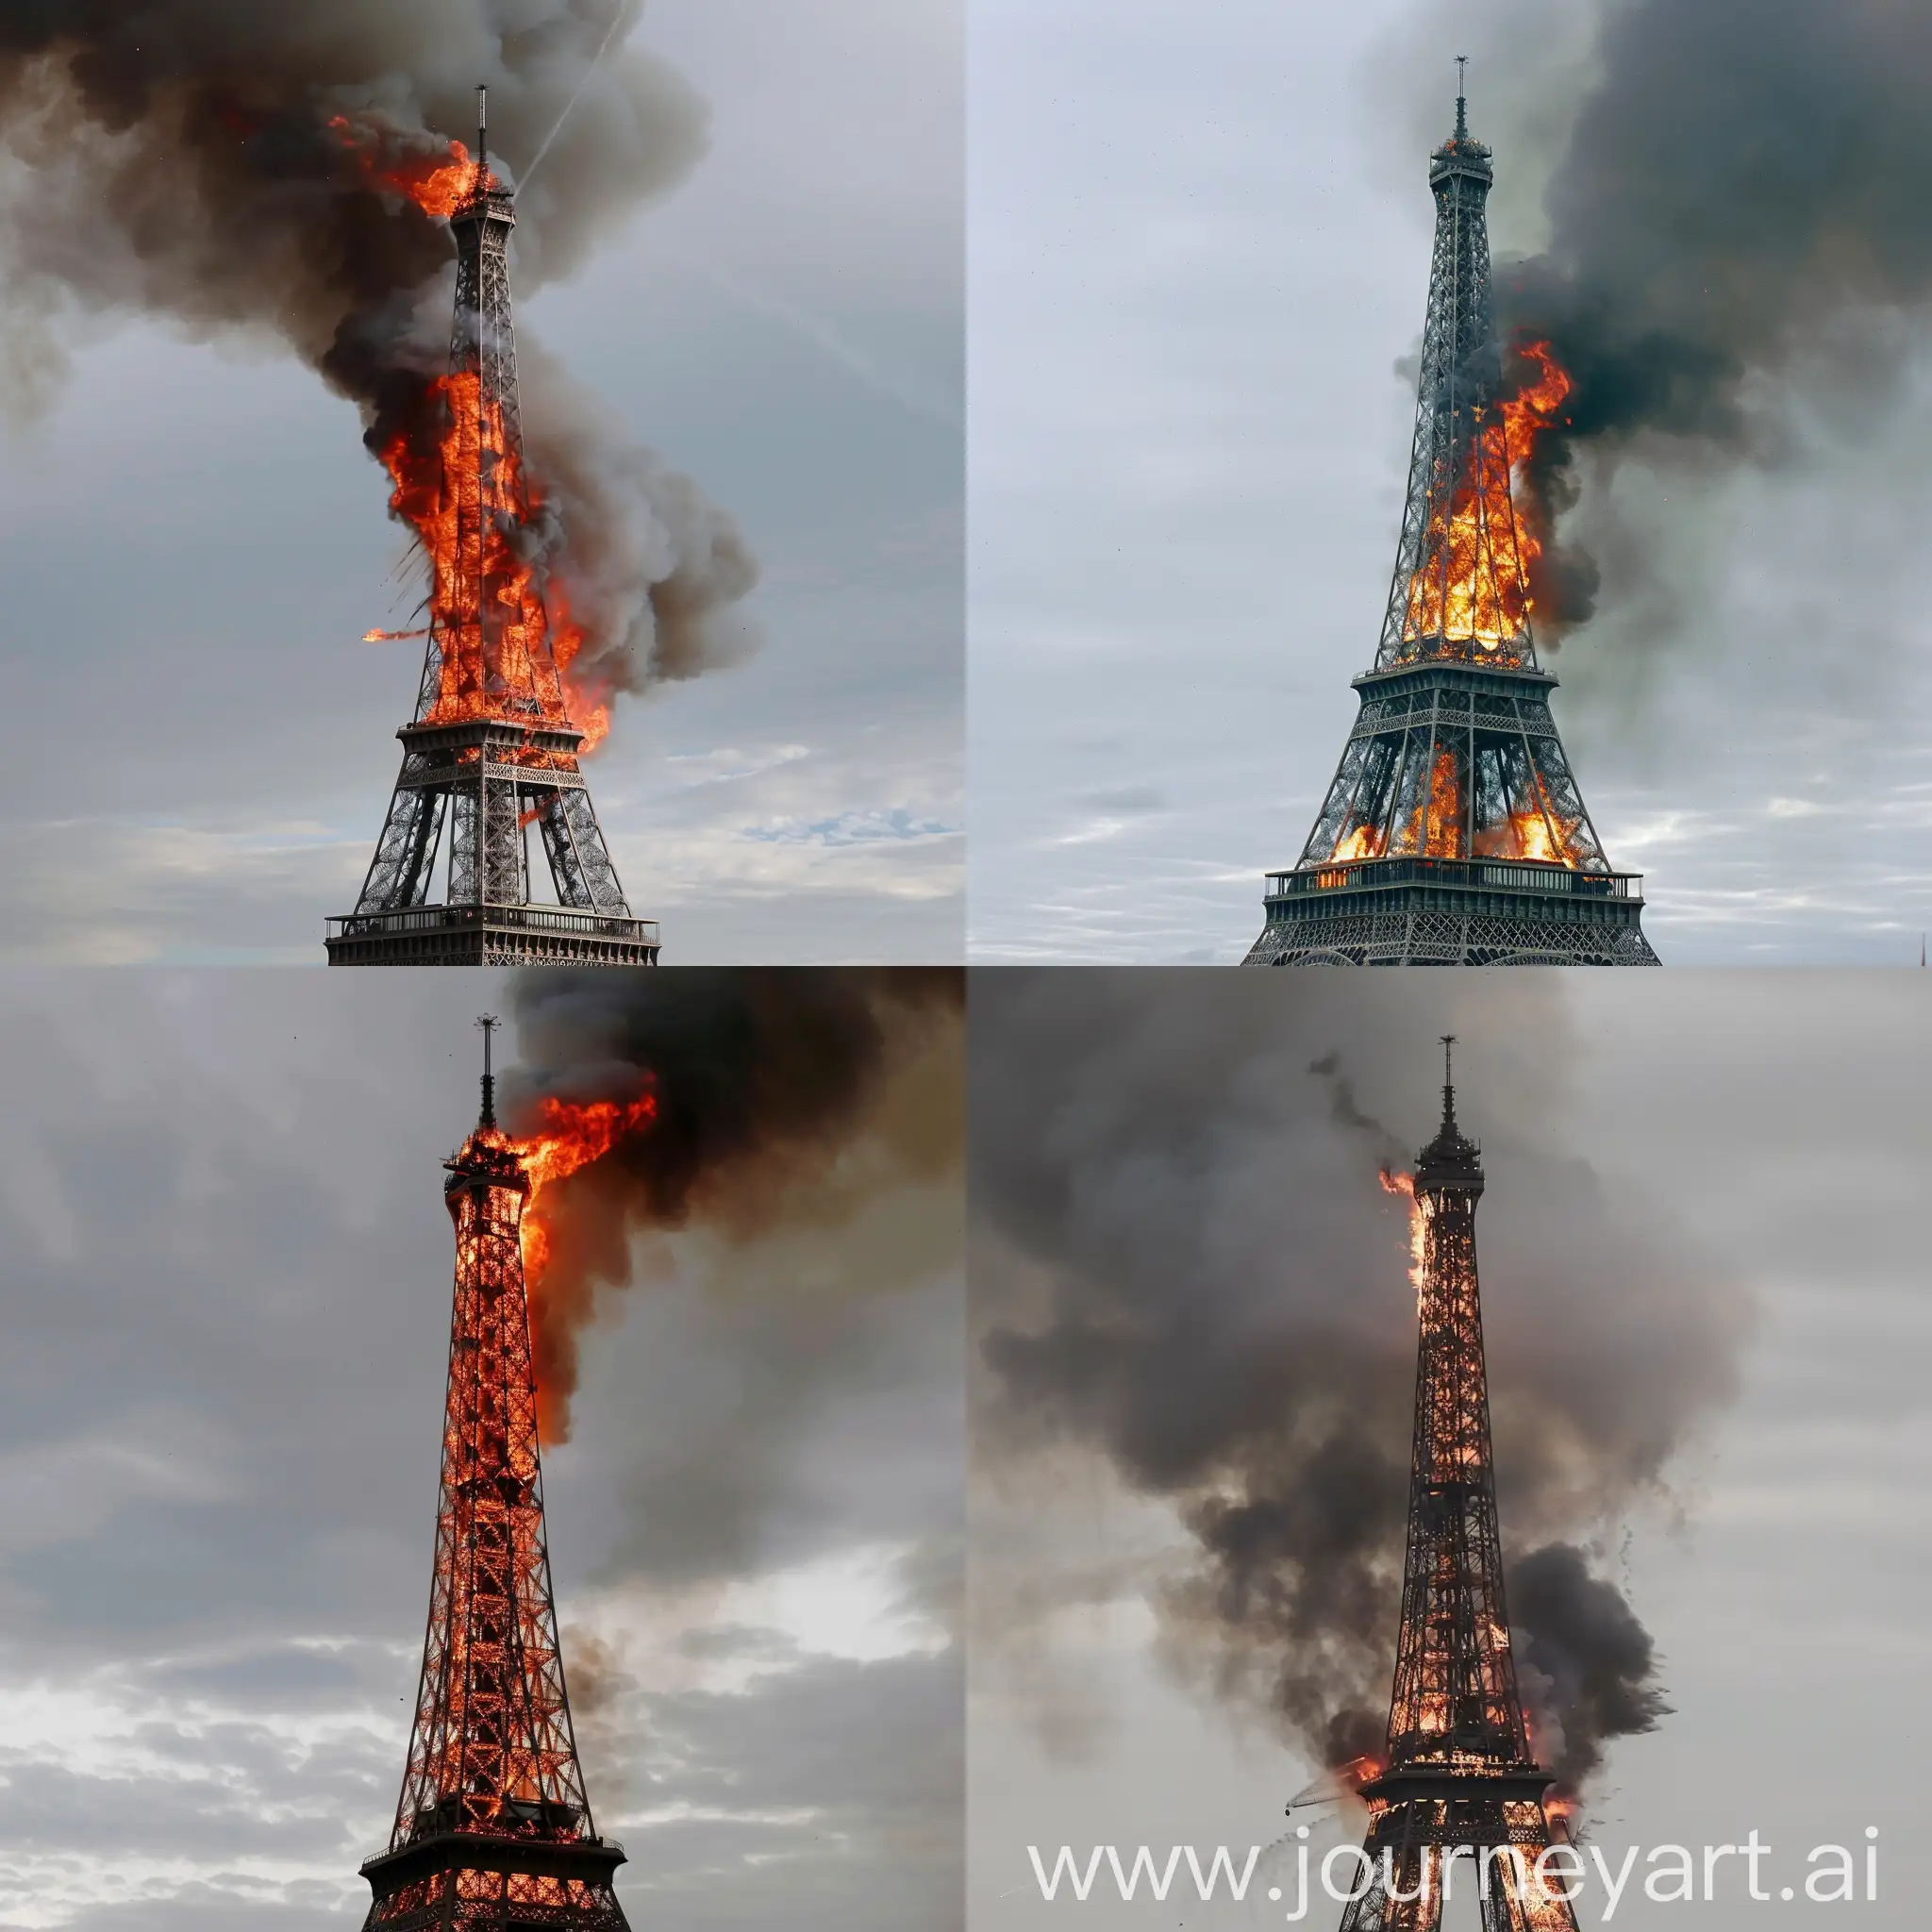 Eiffel Tower burning